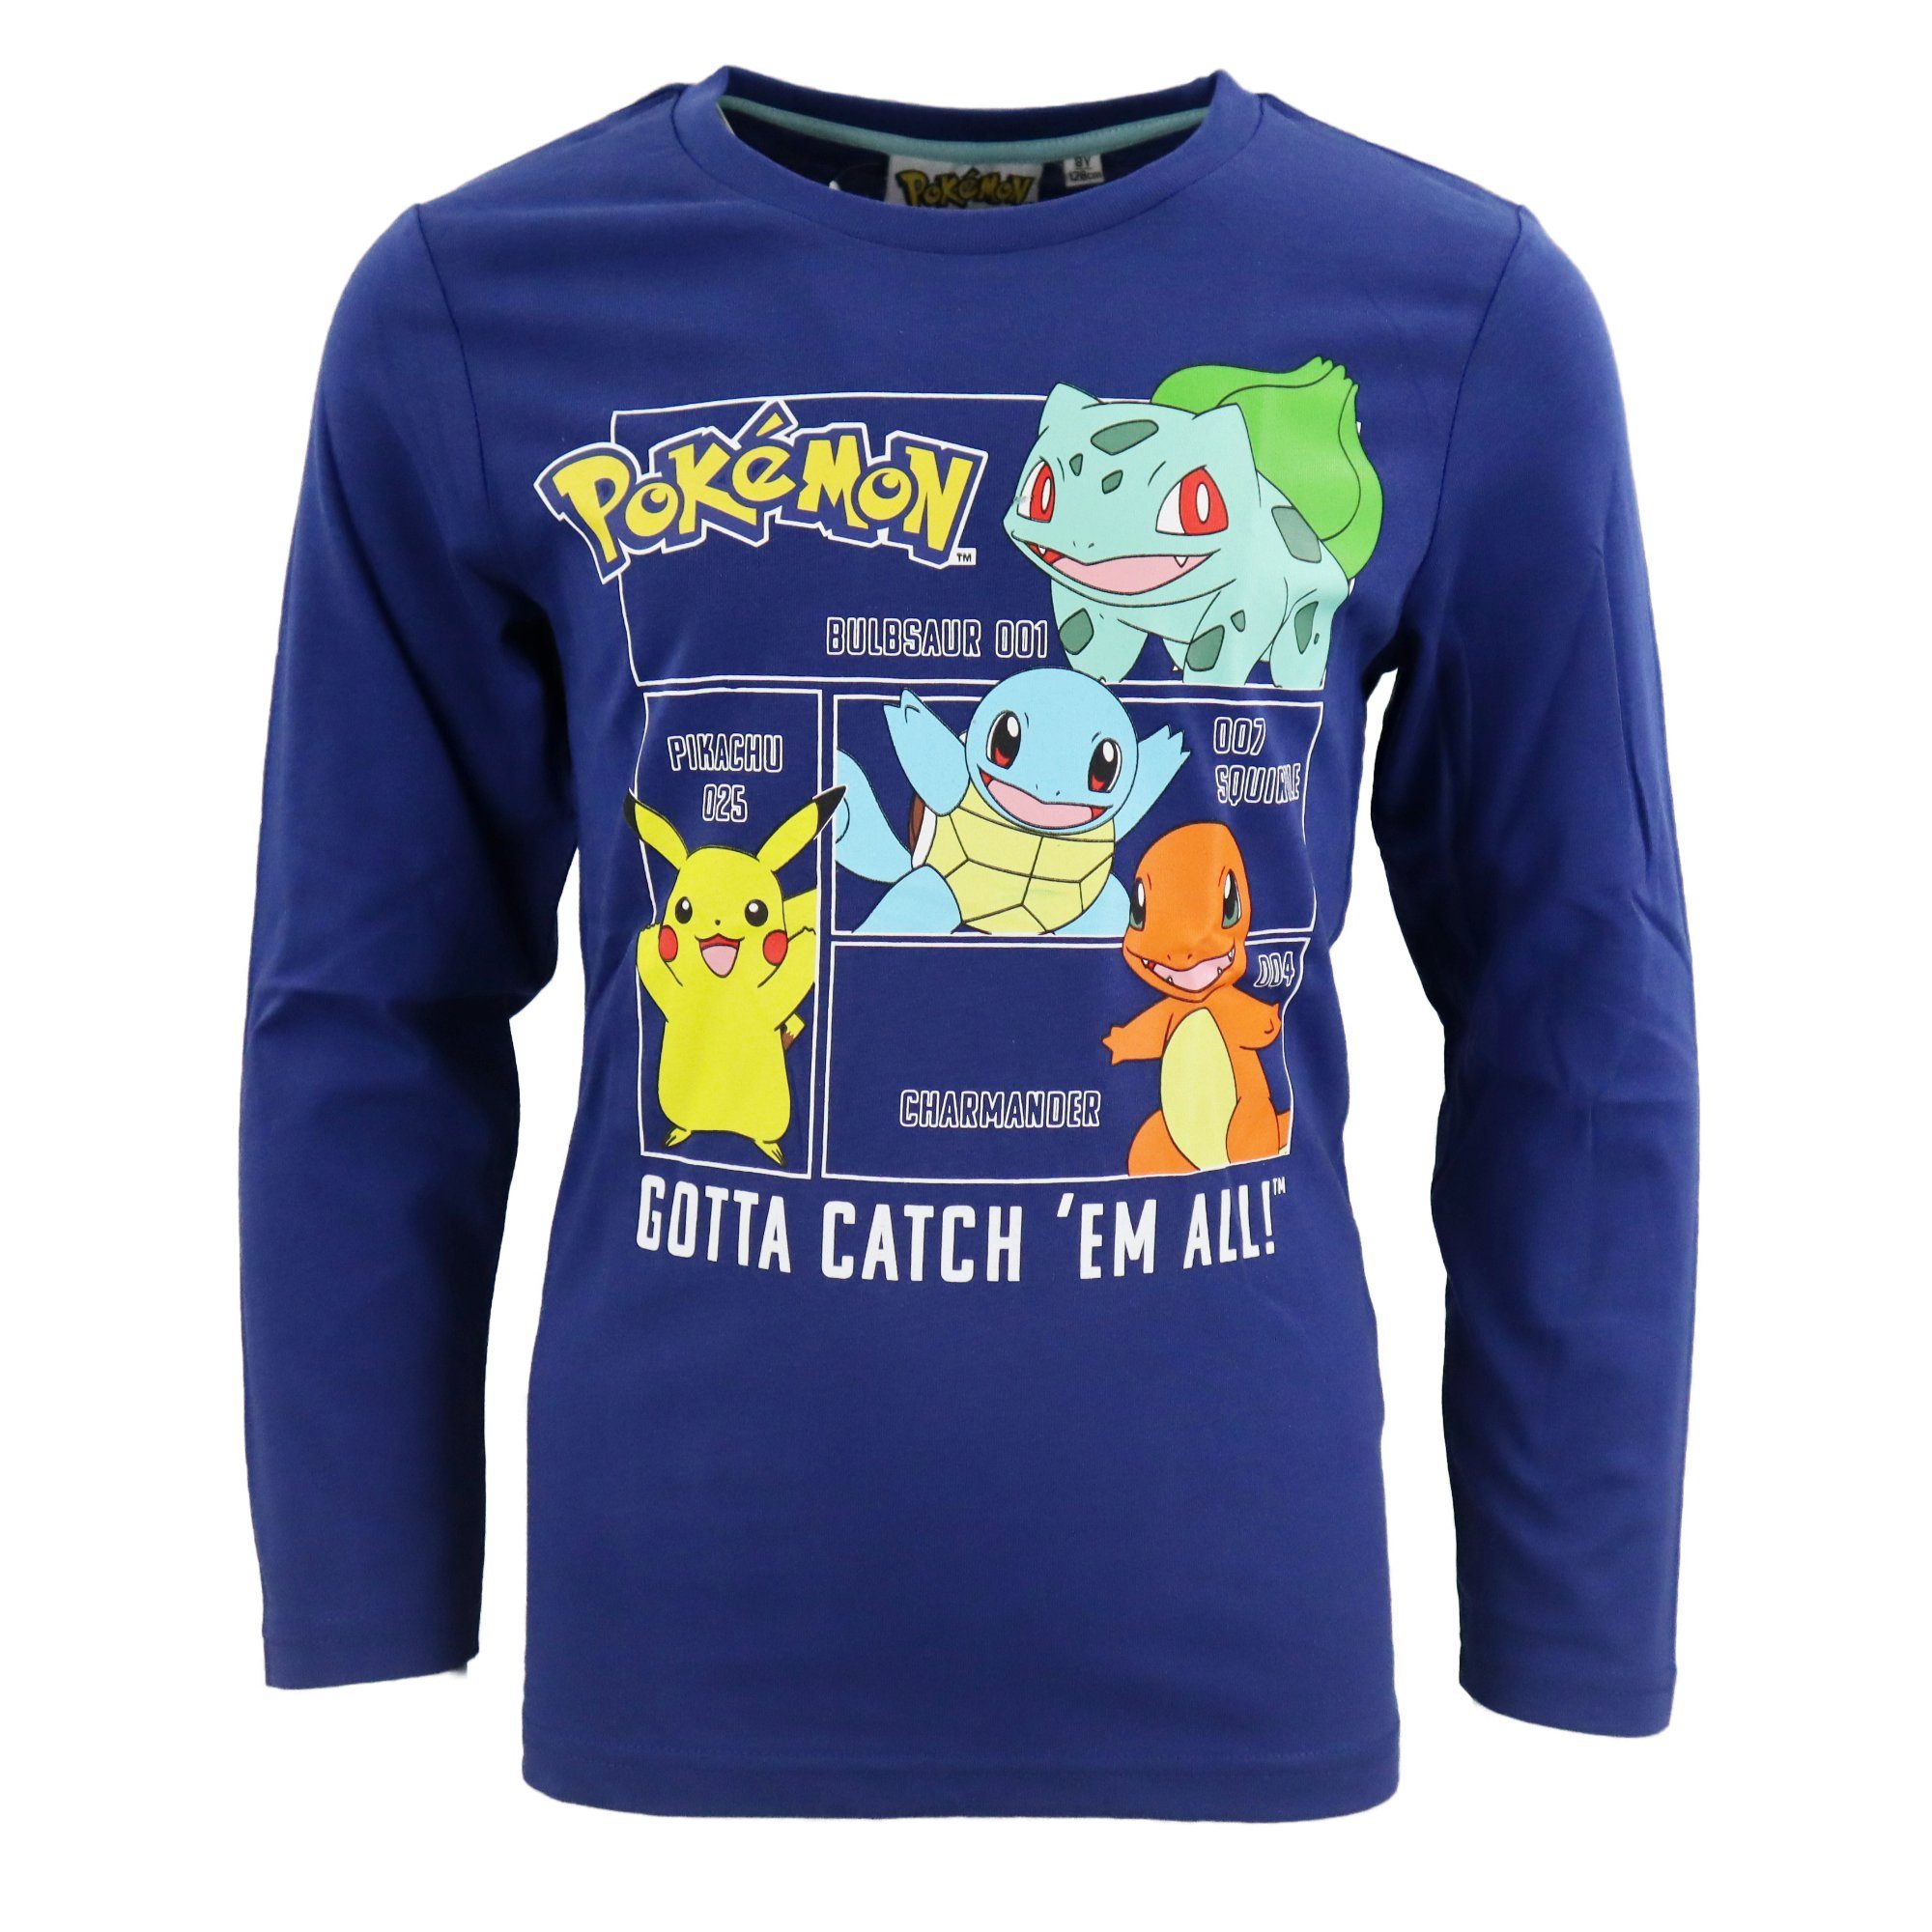 POKÉMON Langarmshirt Pokemon Pikachu Kinder 122, Shirt T-Shirt Gr. Baumwolle 116 langarm bis